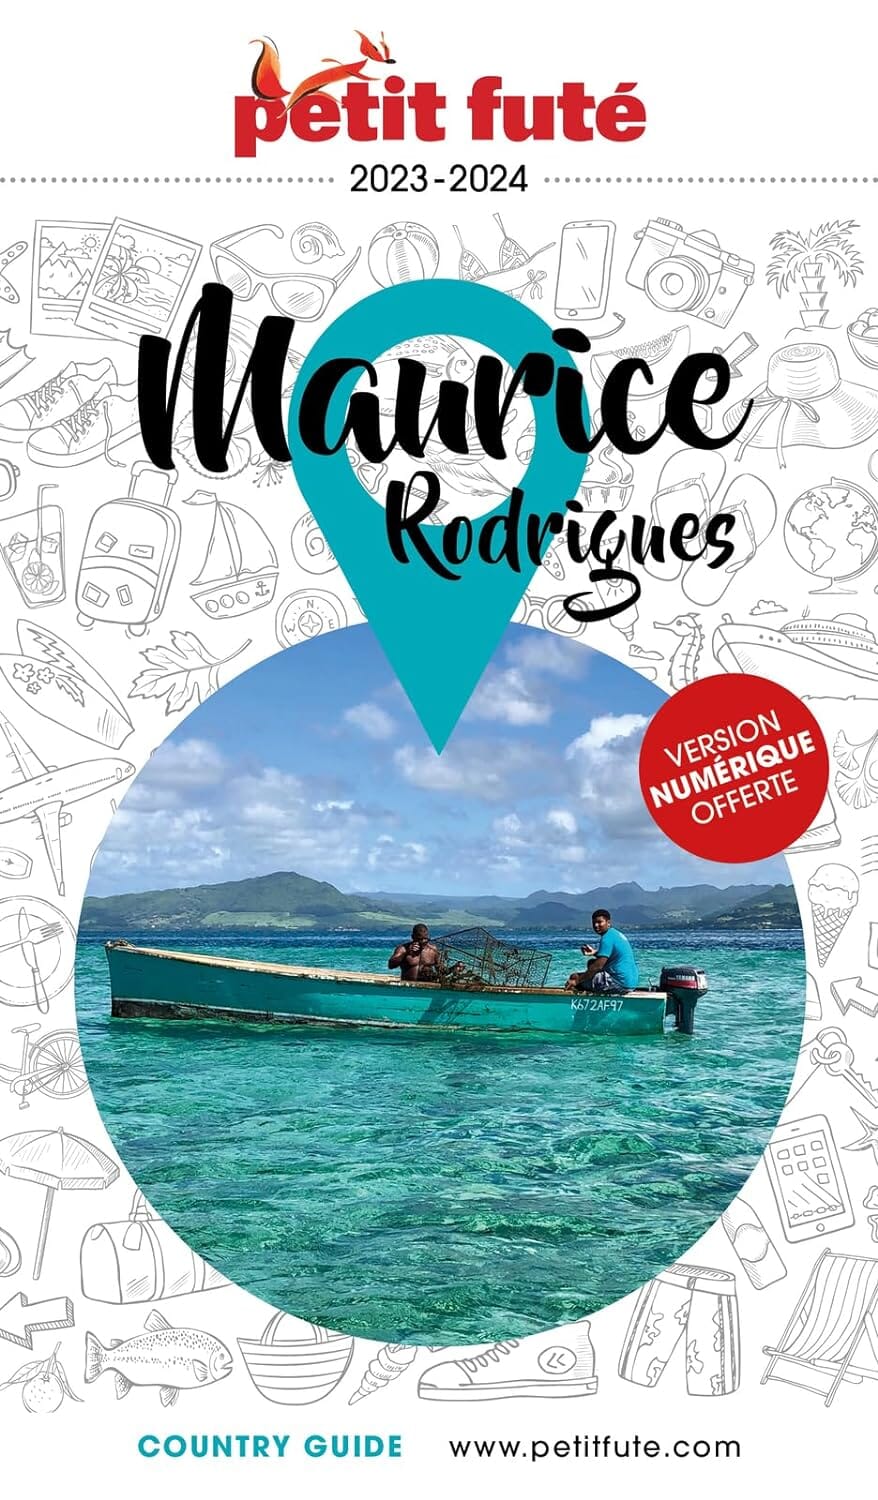 Guide de voyage - Maurice & Rodrigues 2023/24 | Petit Futé guide de voyage Petit Futé 